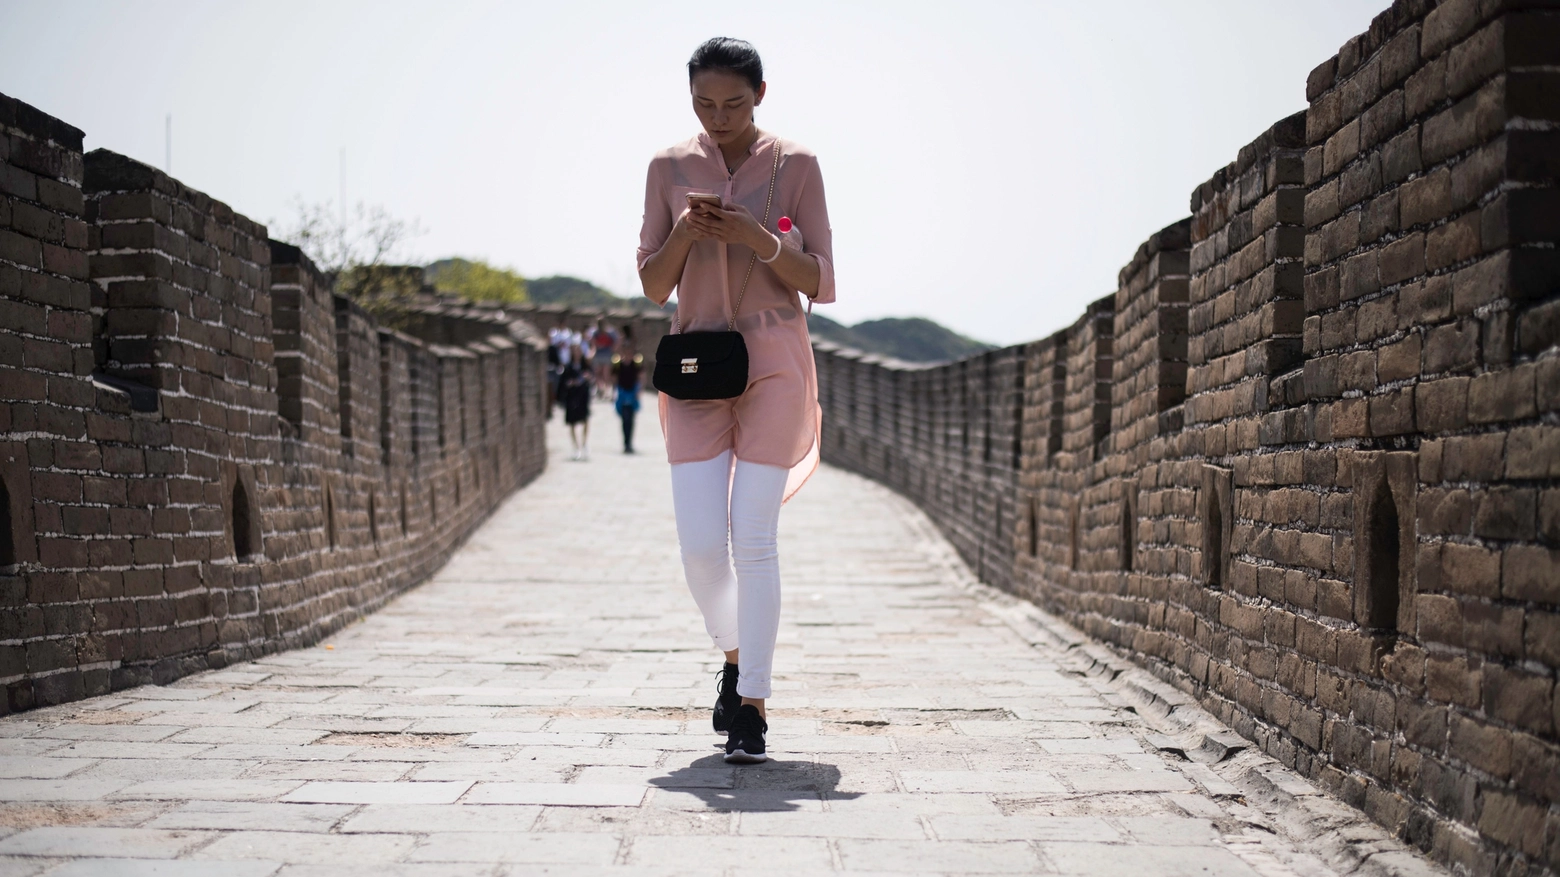 Incollati allo smartphone anche sulla grande muraglia cinese (Afp)